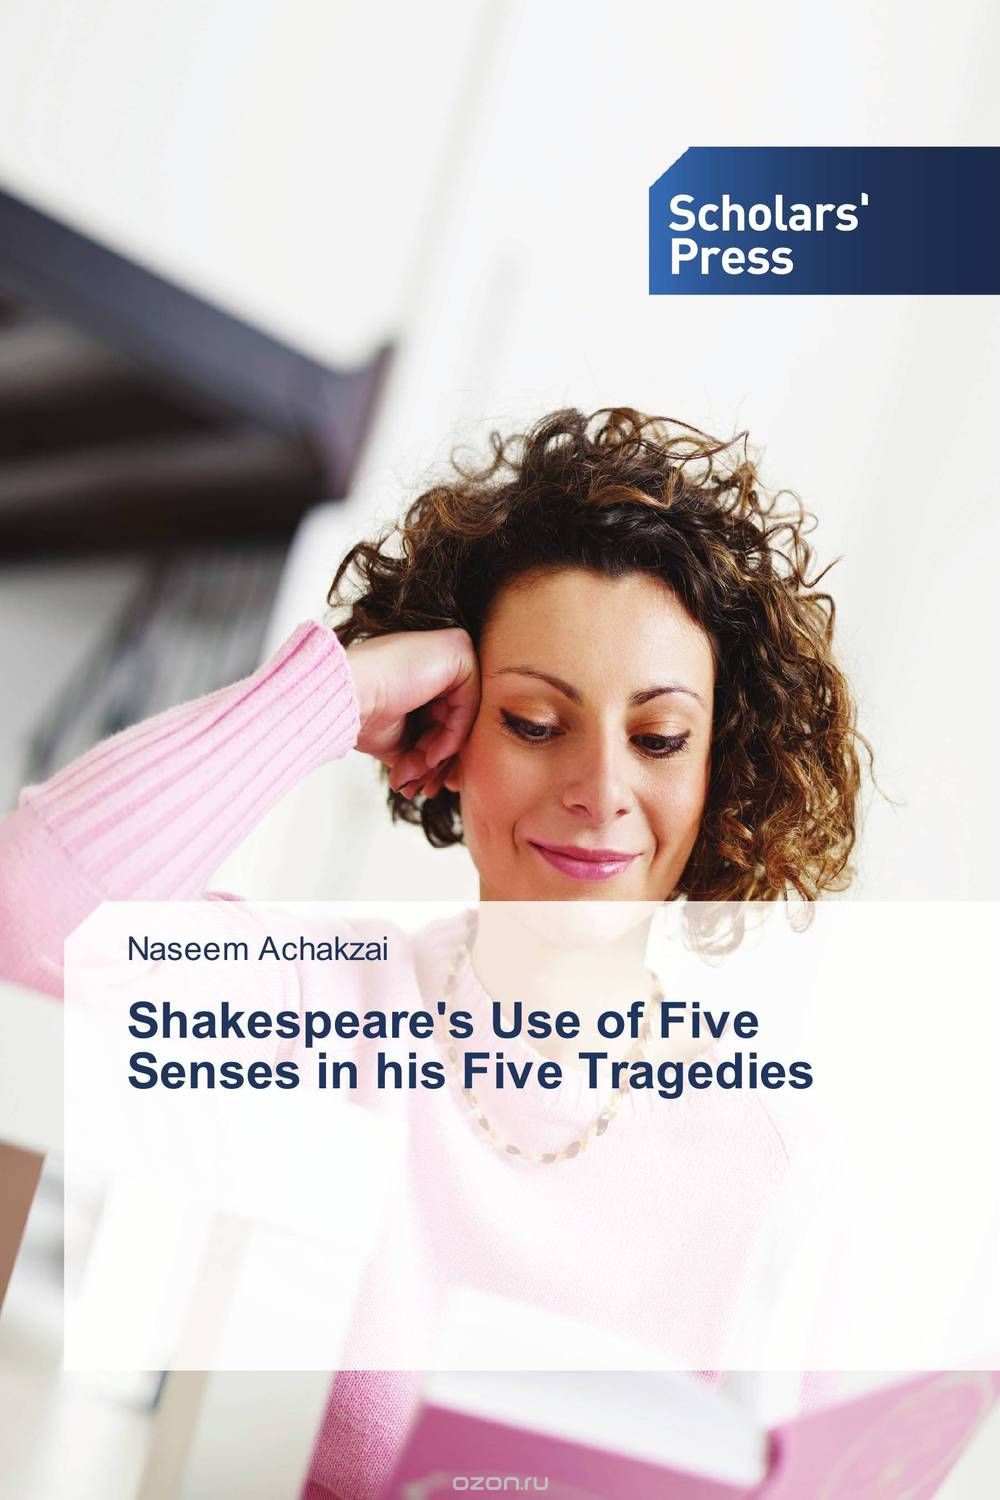 Скачать книгу "Shakespeare's Use of Five Senses in his Five Tragedies"